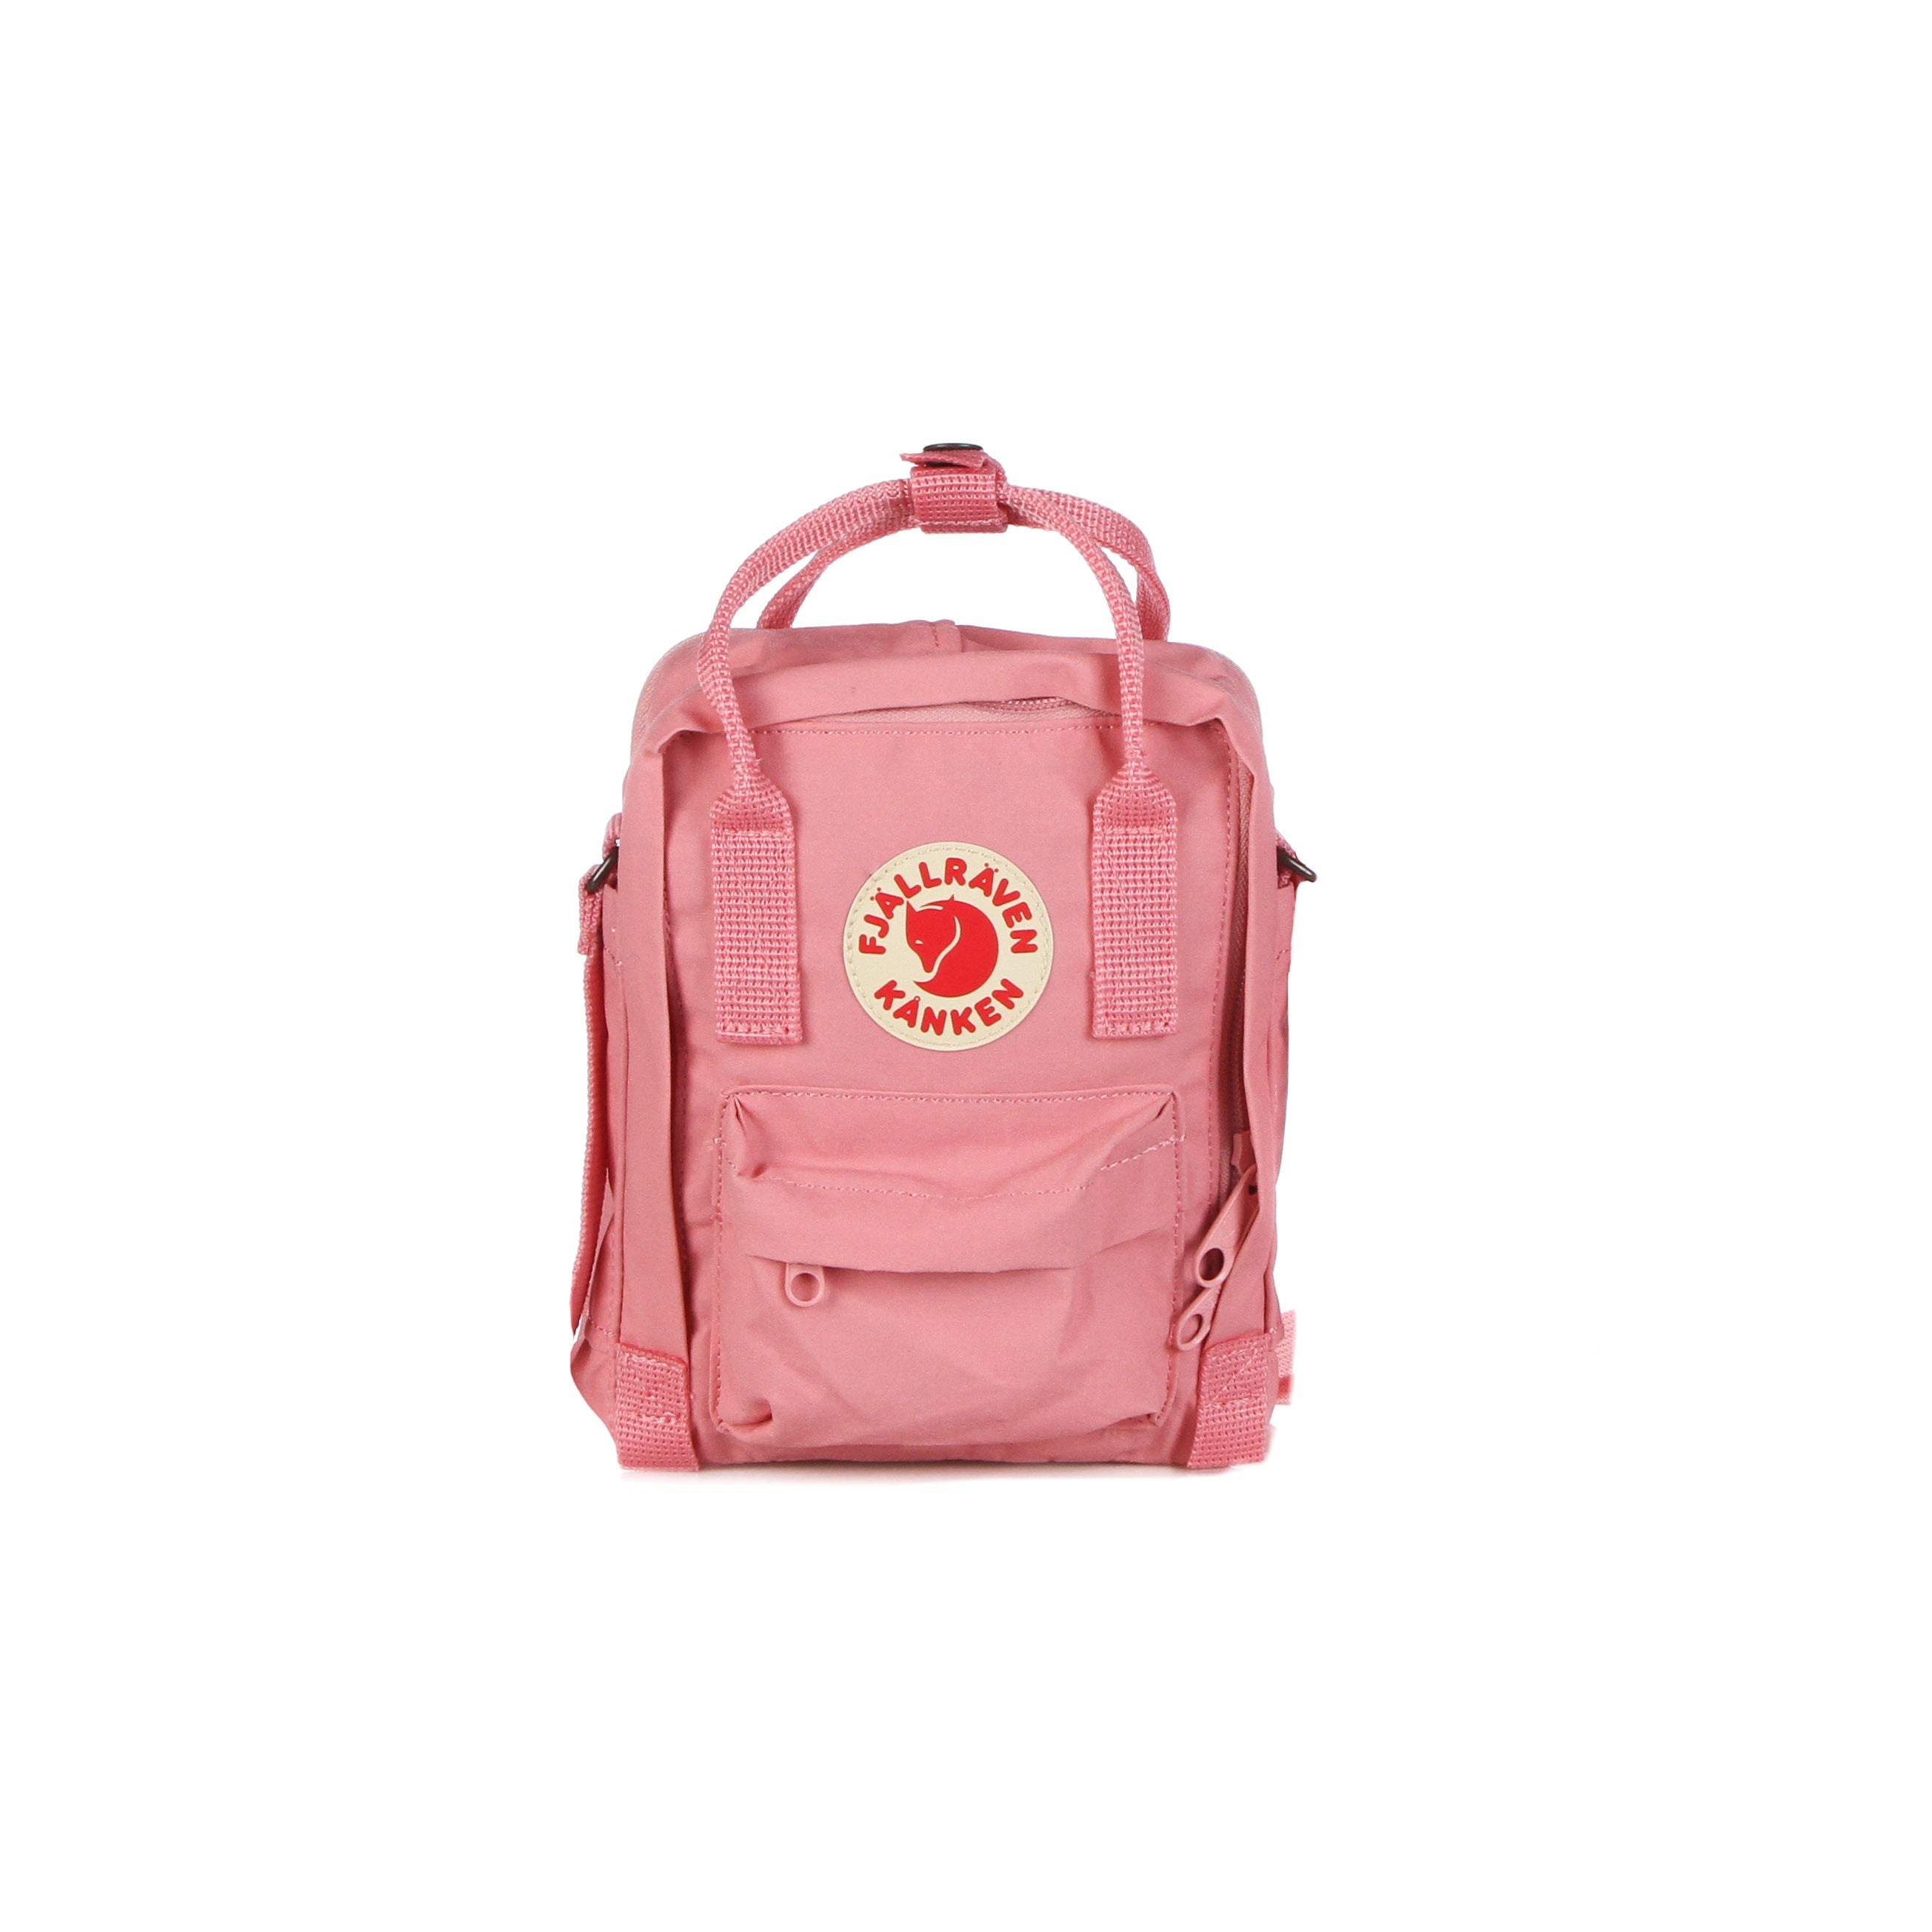 Kanken Sling Pink Unisex Bag